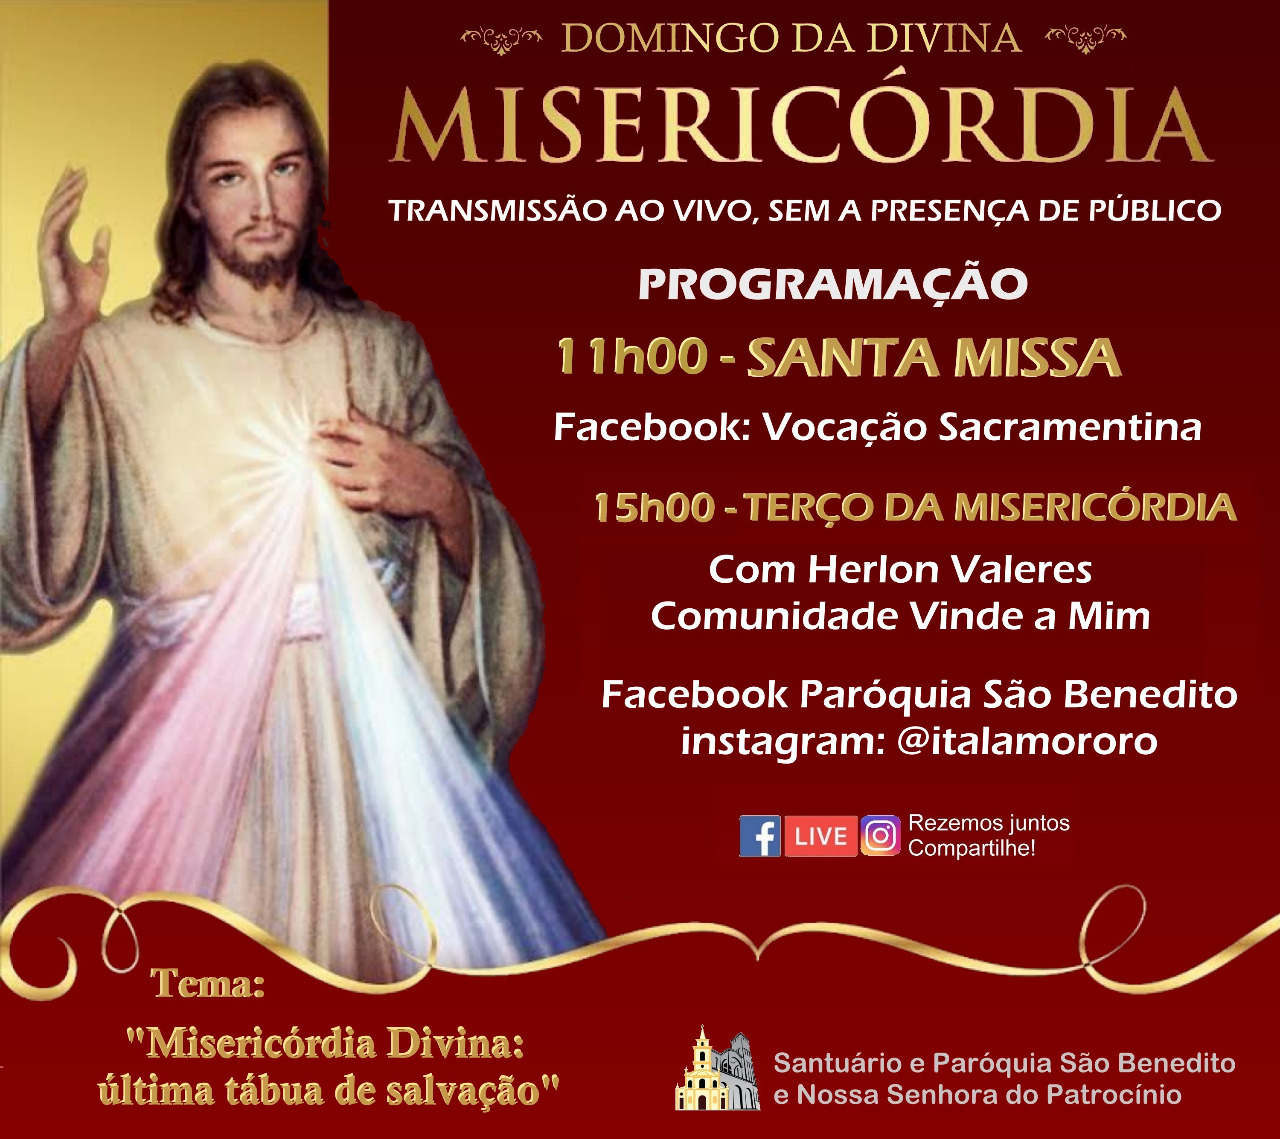 Confira a Programação do Domingo da Divina Misericórdia 2020 transmitido da Paróquia São Benedito